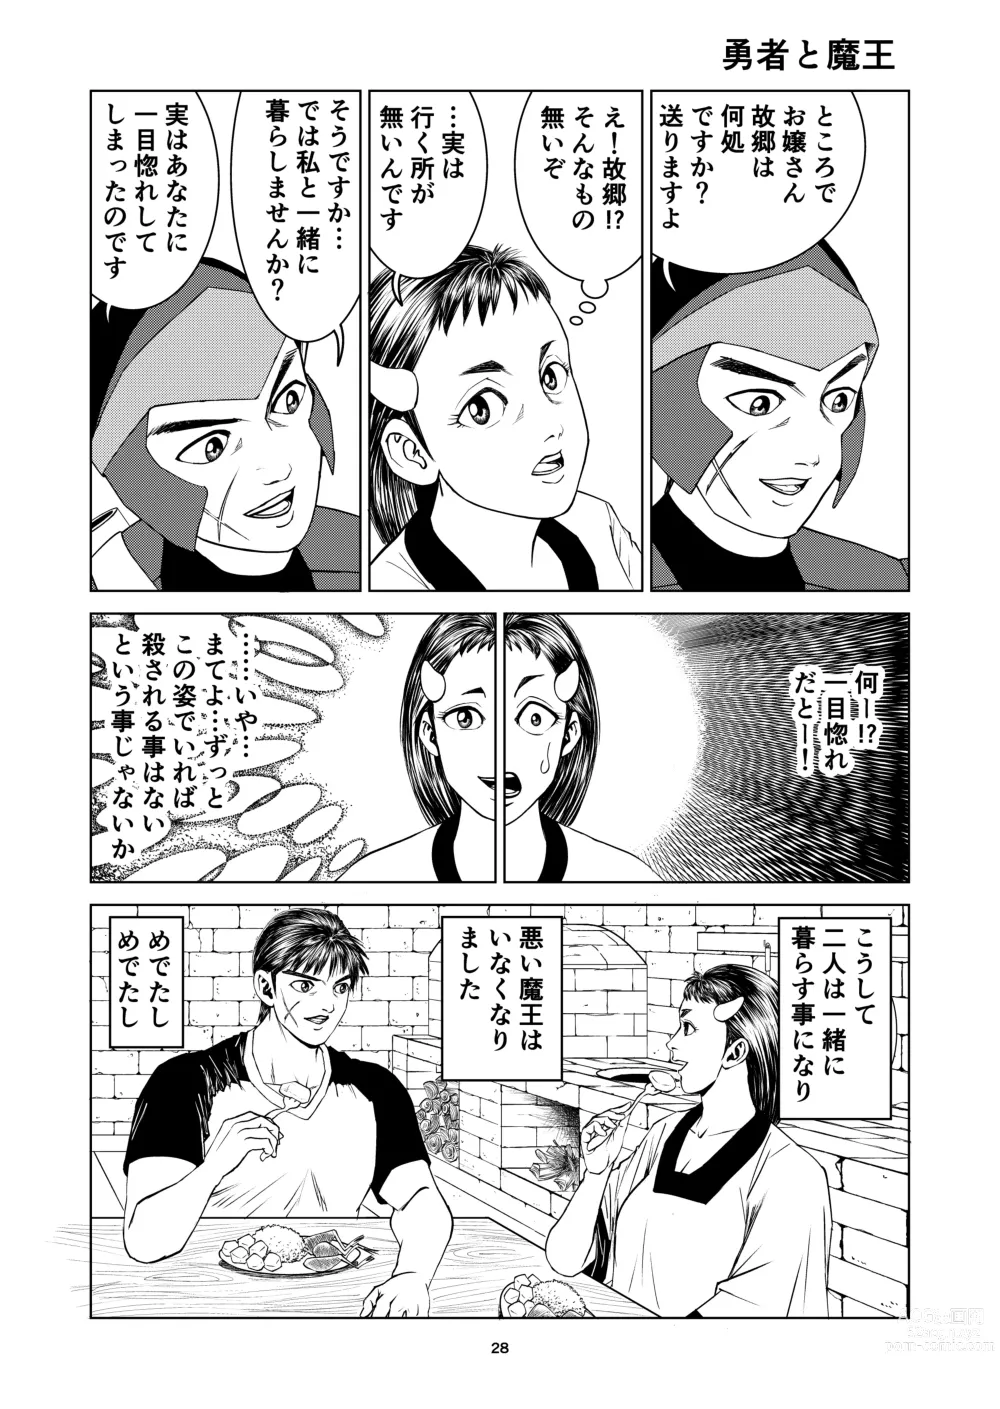 Page 28 of doujinshi Yutakadou short story collection 2